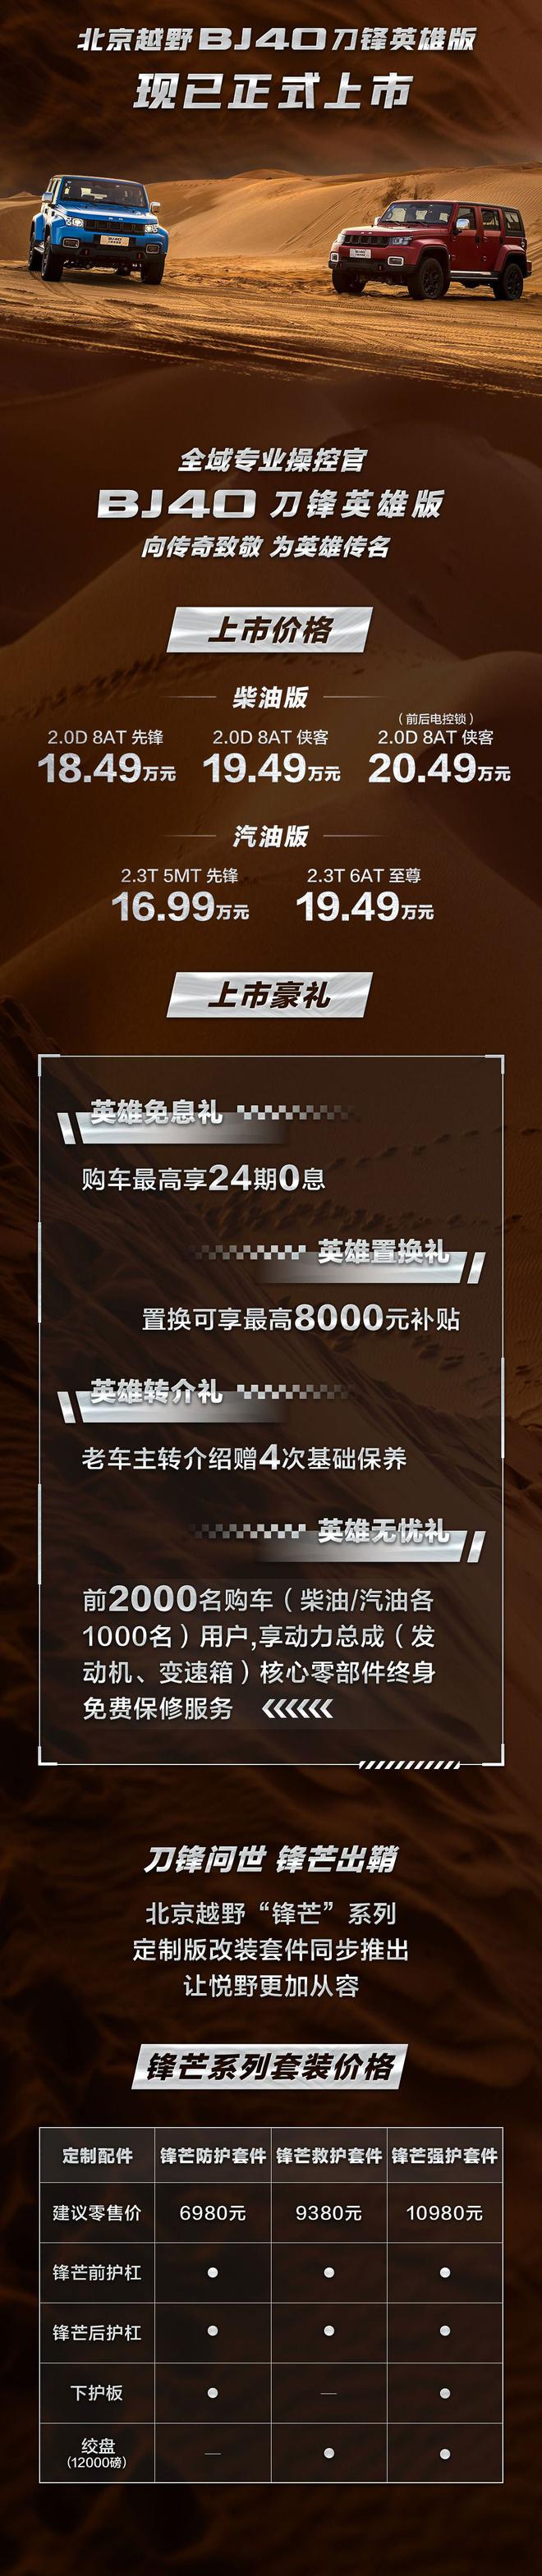 北京BJ40刀锋英雄版售16.99-20.49万元上市